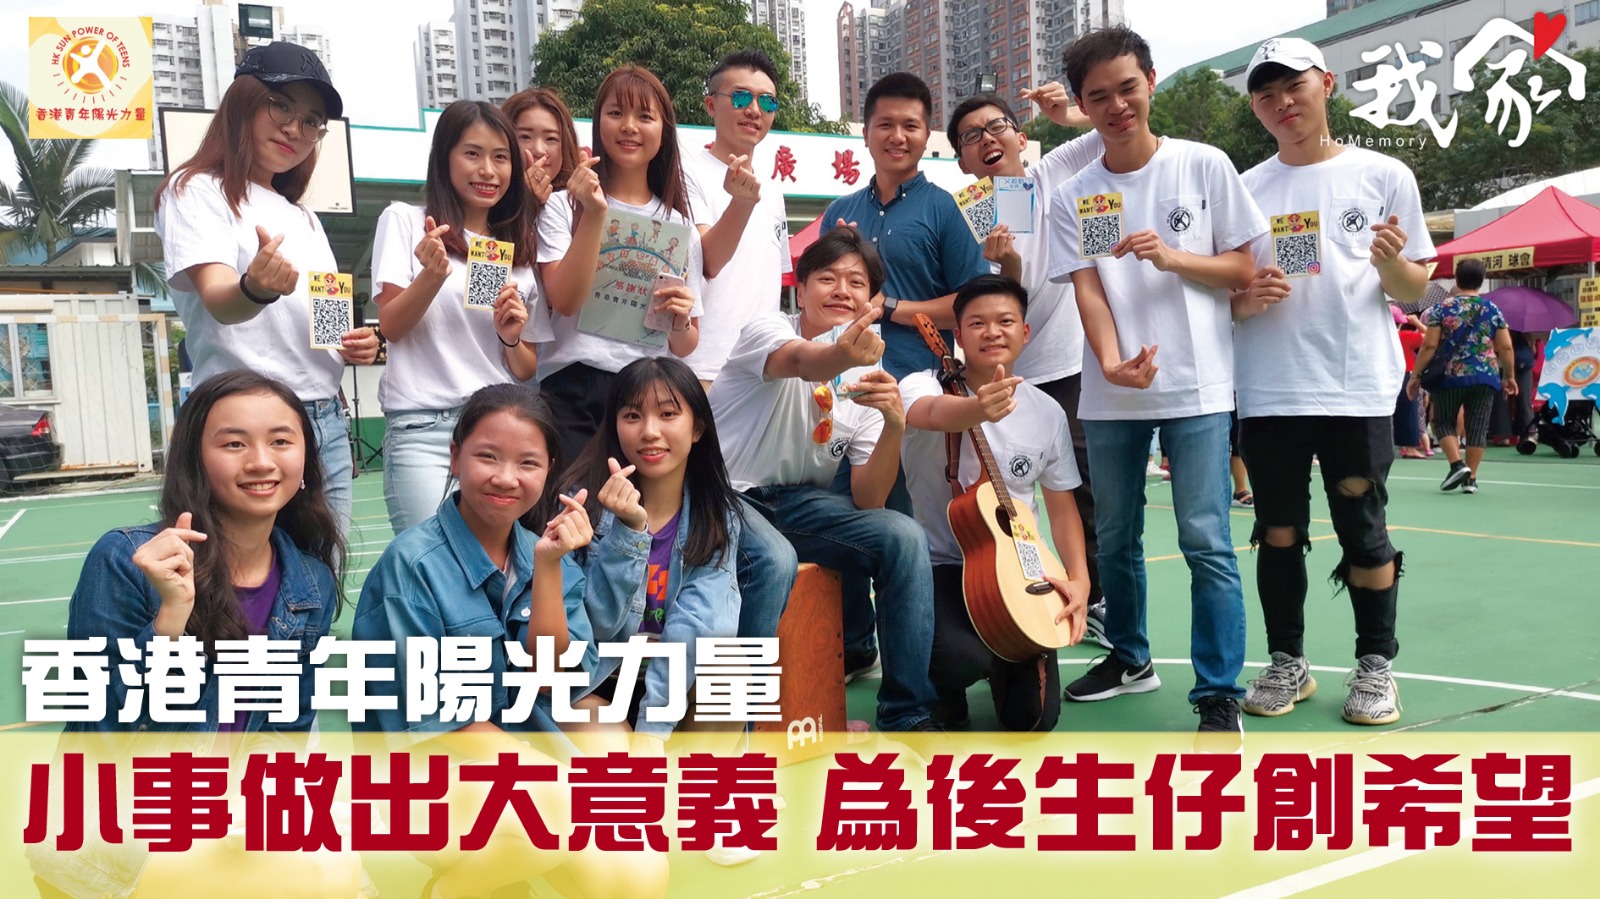 (新界)香港青年陽光力量──小事做出大意義 為後生仔創希望